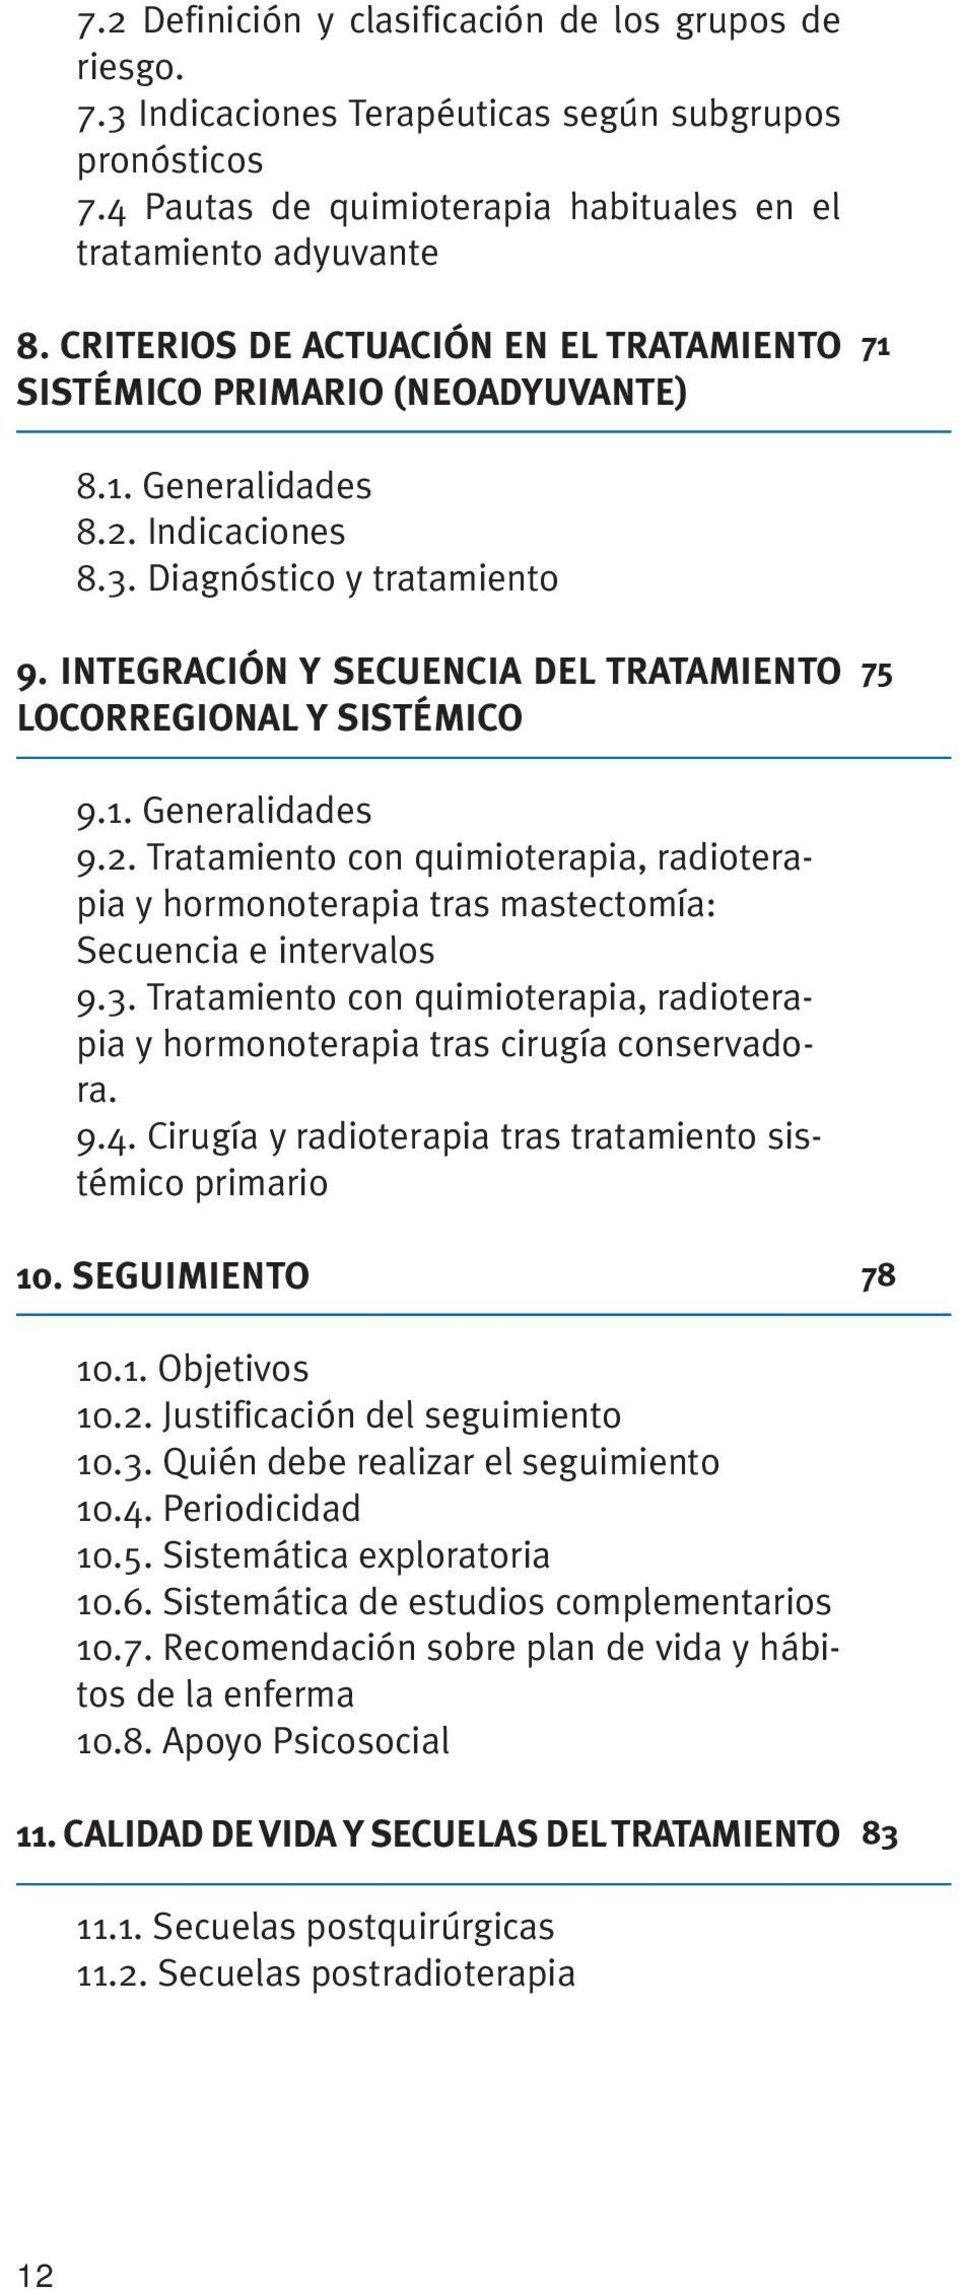 INTEGRACIÓN Y SECUENCIA DEL TRATAMIENTO LOCORREGIONAL Y SISTÉMICO 75 9.1. Generalidades 9.2. Tratamiento con quimioterapia, radioterapia y hormonoterapia tras mastectomía: Secuencia e intervalos 9.3.